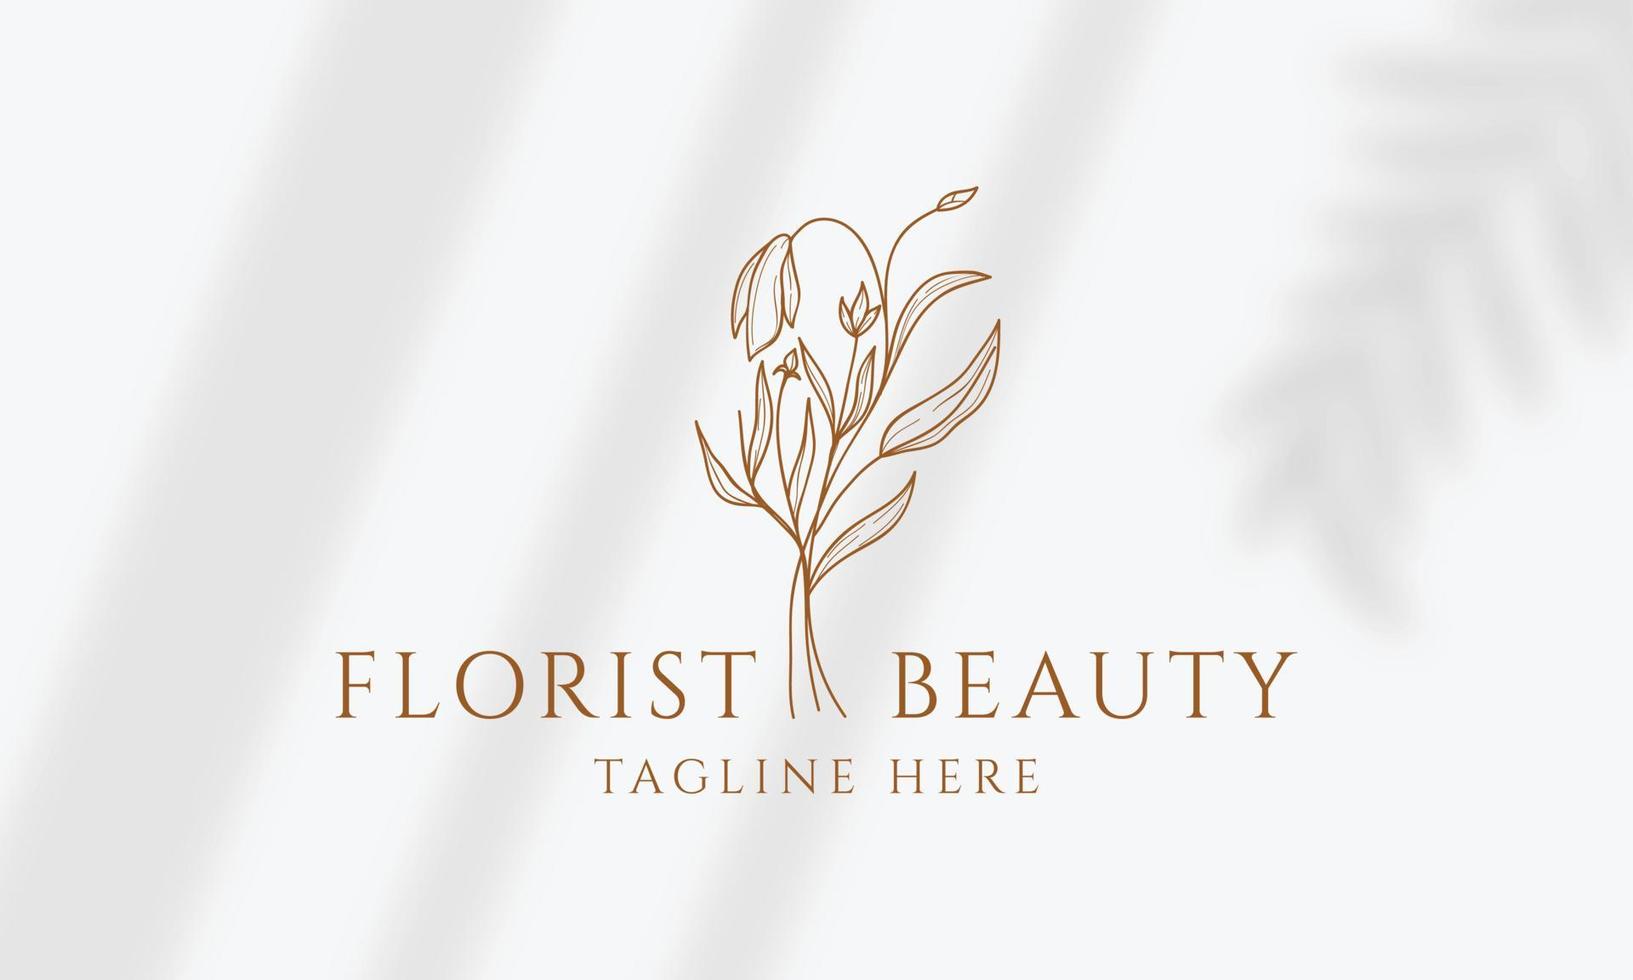 logo dessiné à la main d'élément floral botanique avec fleur et feuilles sauvages. logo pour spa et salon de beauté, boutique, magasin bio, mariage, designer floral, intérieur, photographie, cosmétique. vecteur